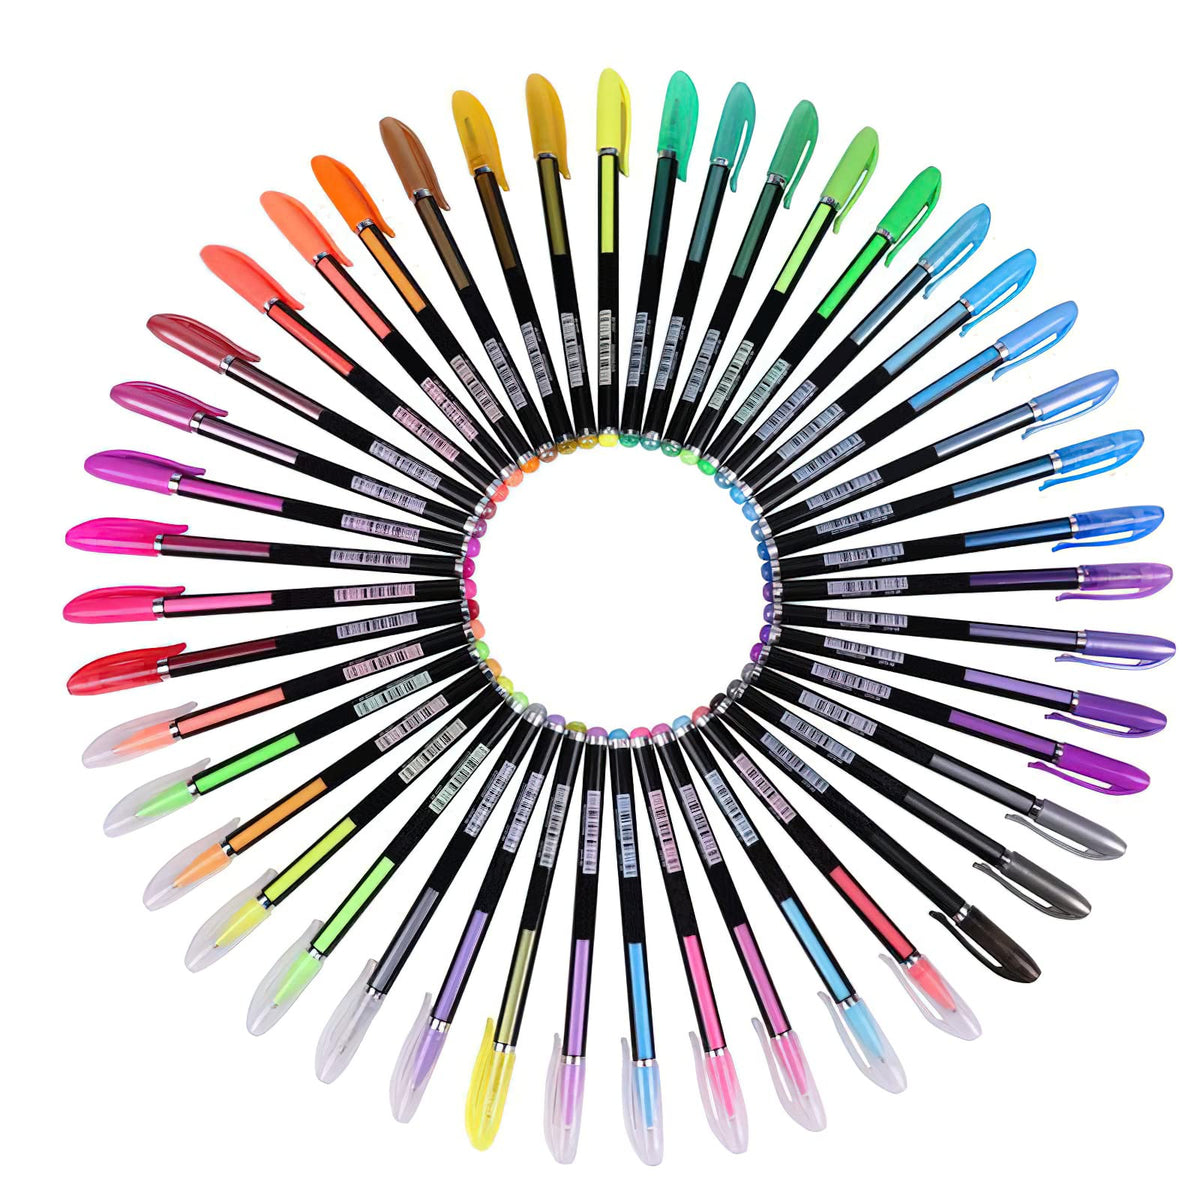 Glitter Gel Pens for Adult Coloring Books, 120 Pack-60 Glitter